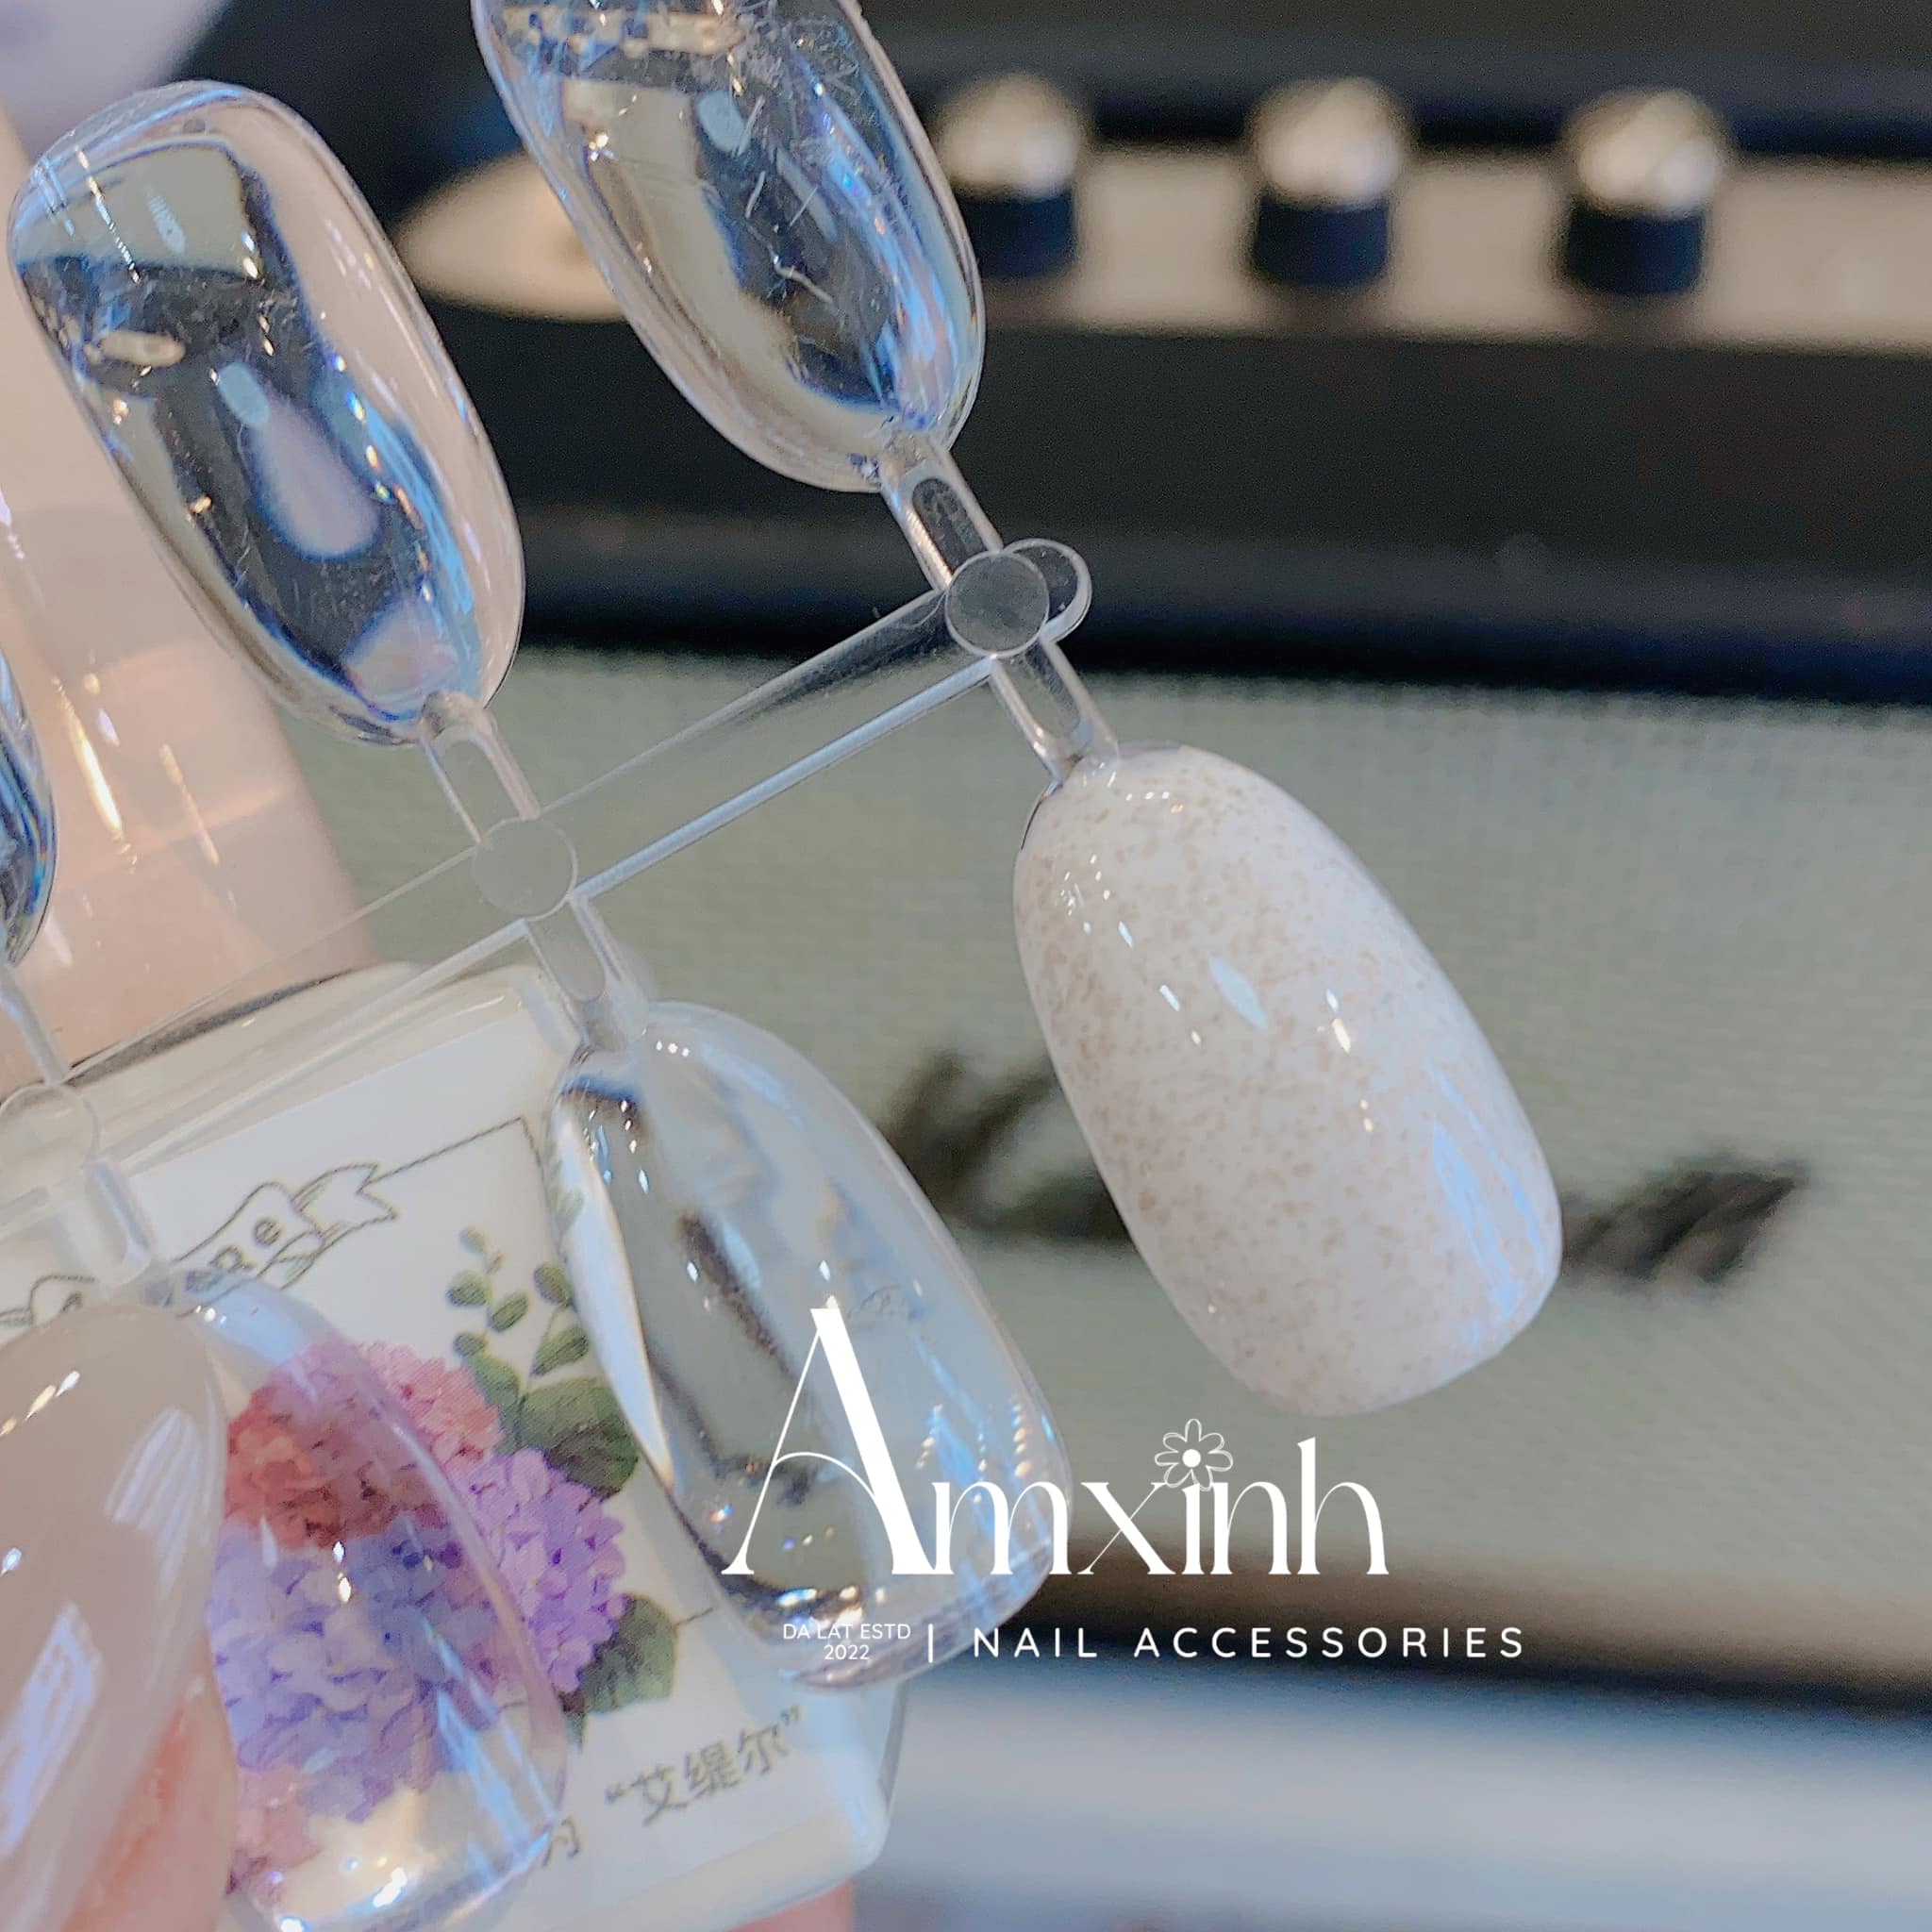 Amxinh kho chuyên cung cấp phụ kiện nails ảnh 2